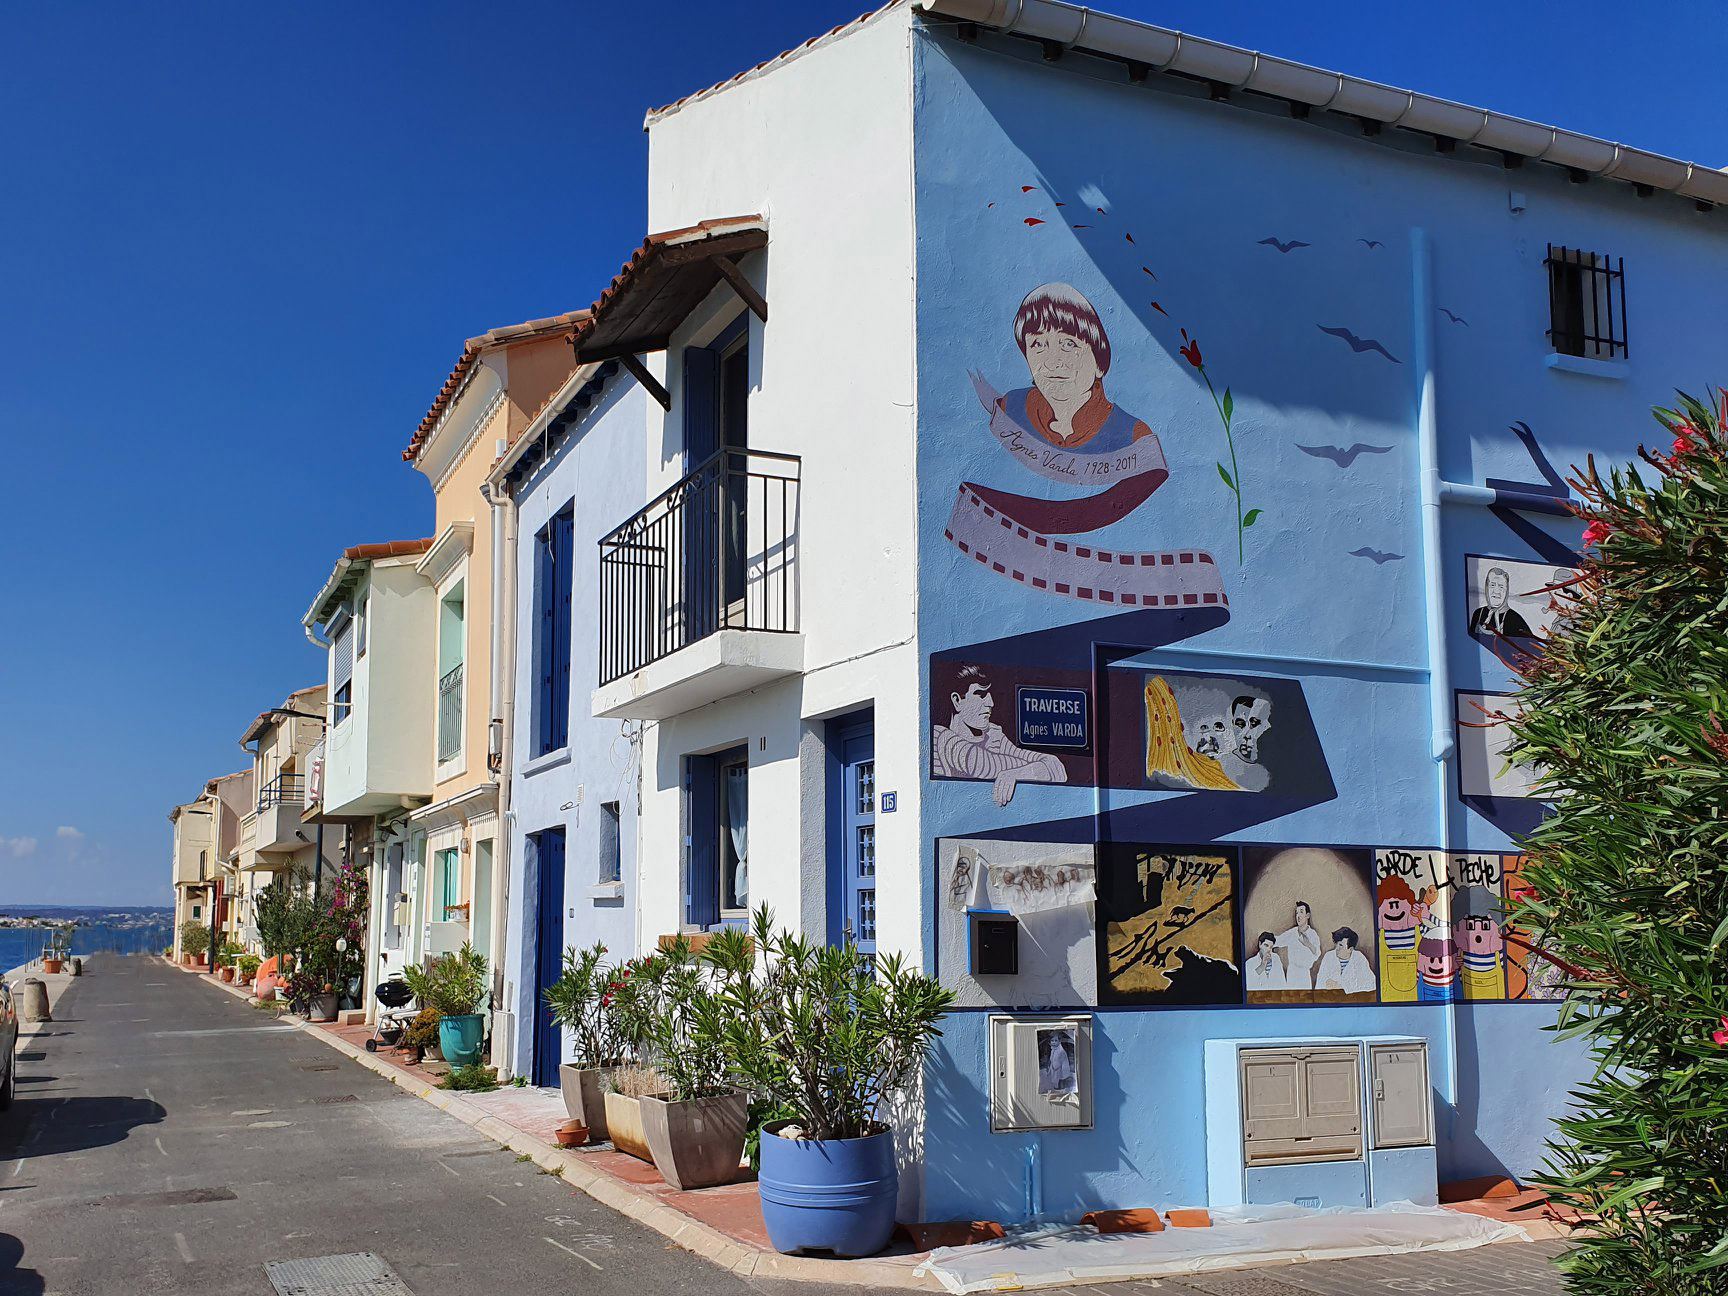 Fresque de l’artiste américaine Barbara Carrasco peinte sur le mur d’une maison de la Pointe Courte à Sète durant la manifestation artistique Sète-Los Angeles 2019